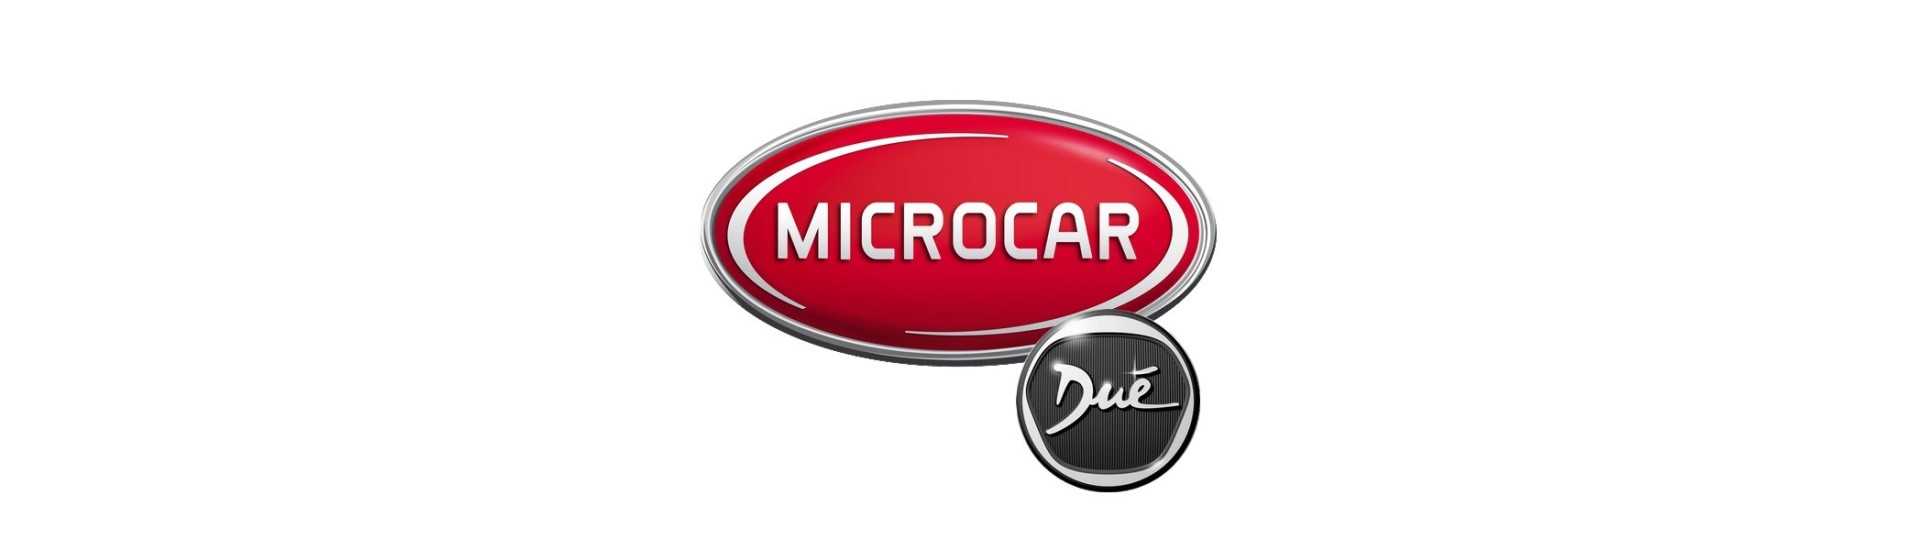 Placa al mejor precio coche sin permiso Microcar Dué